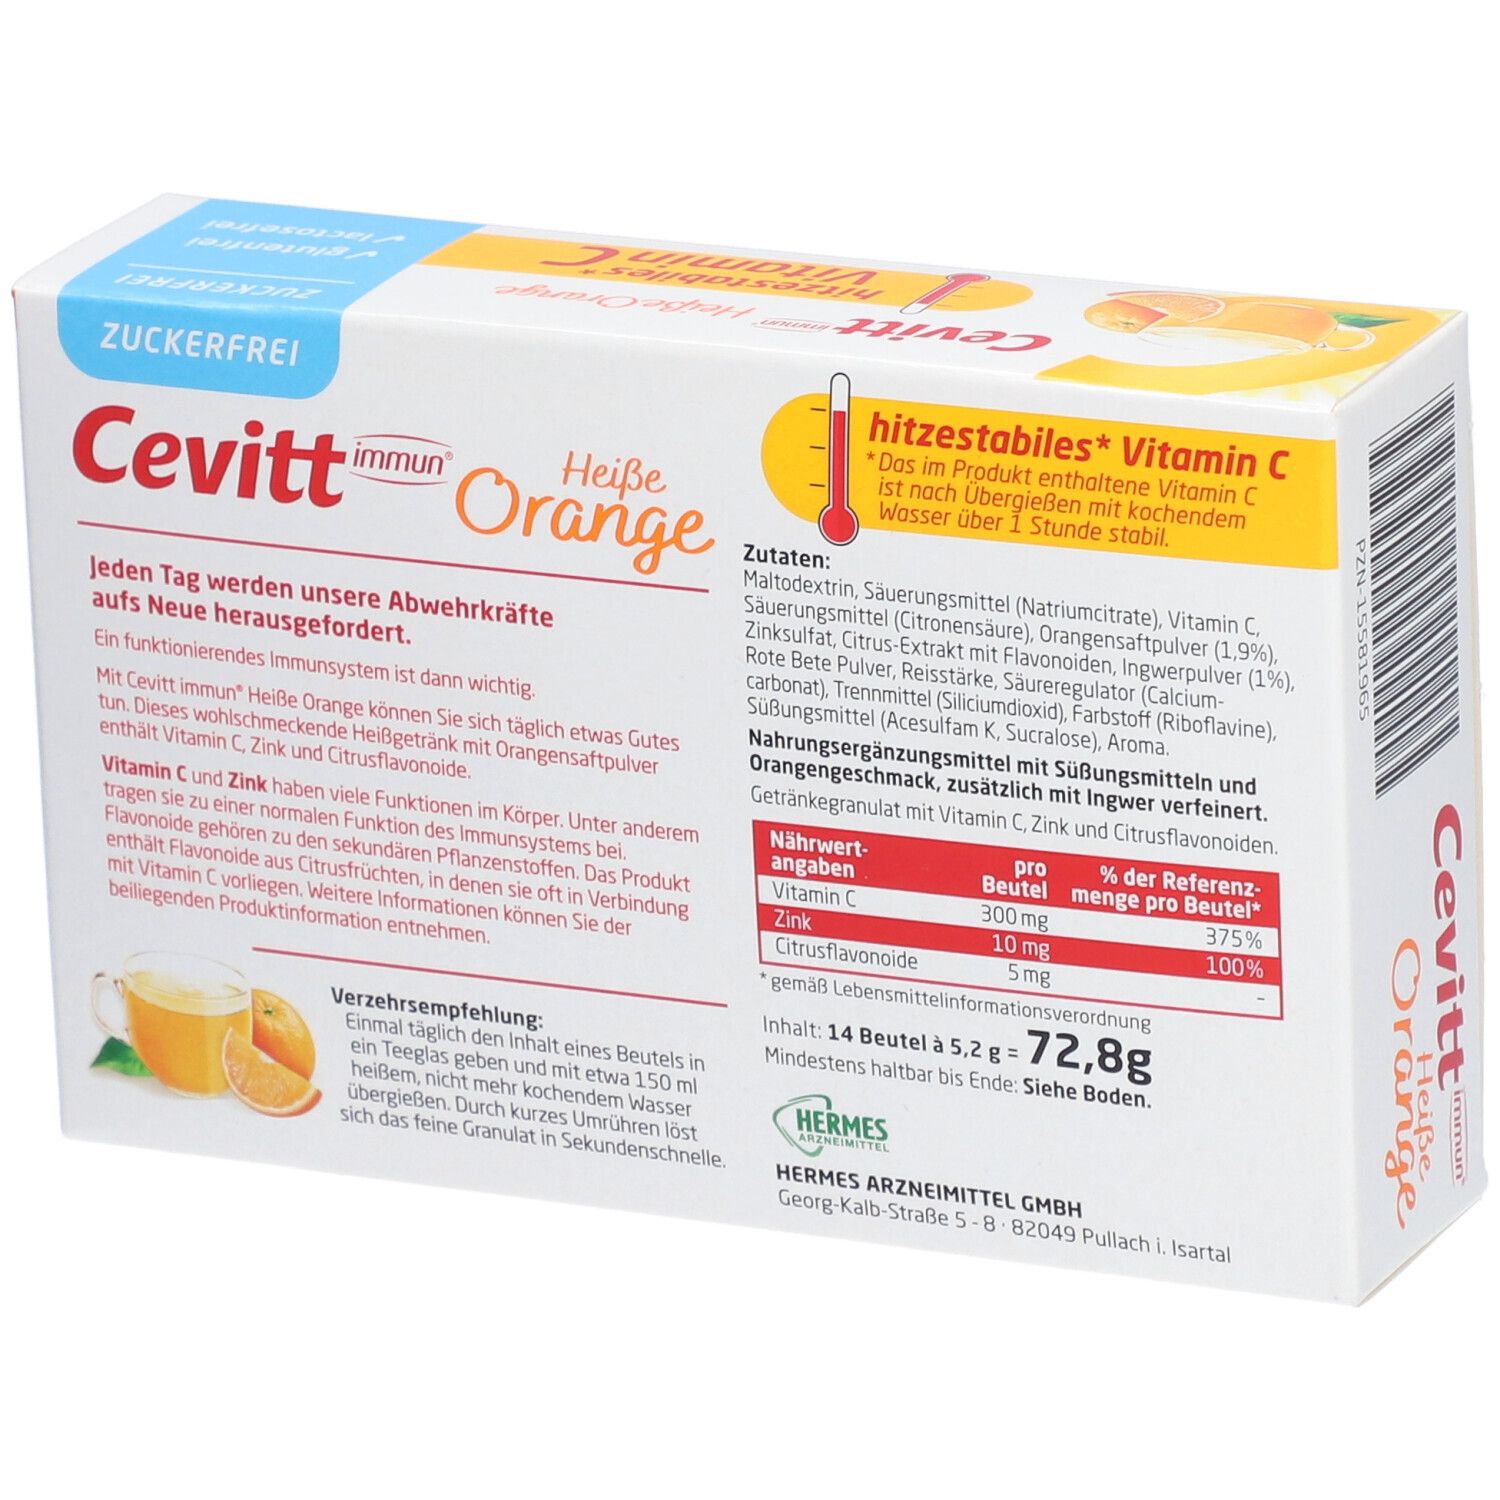 Cevitt immun ® heiße Orange zuckerfrei